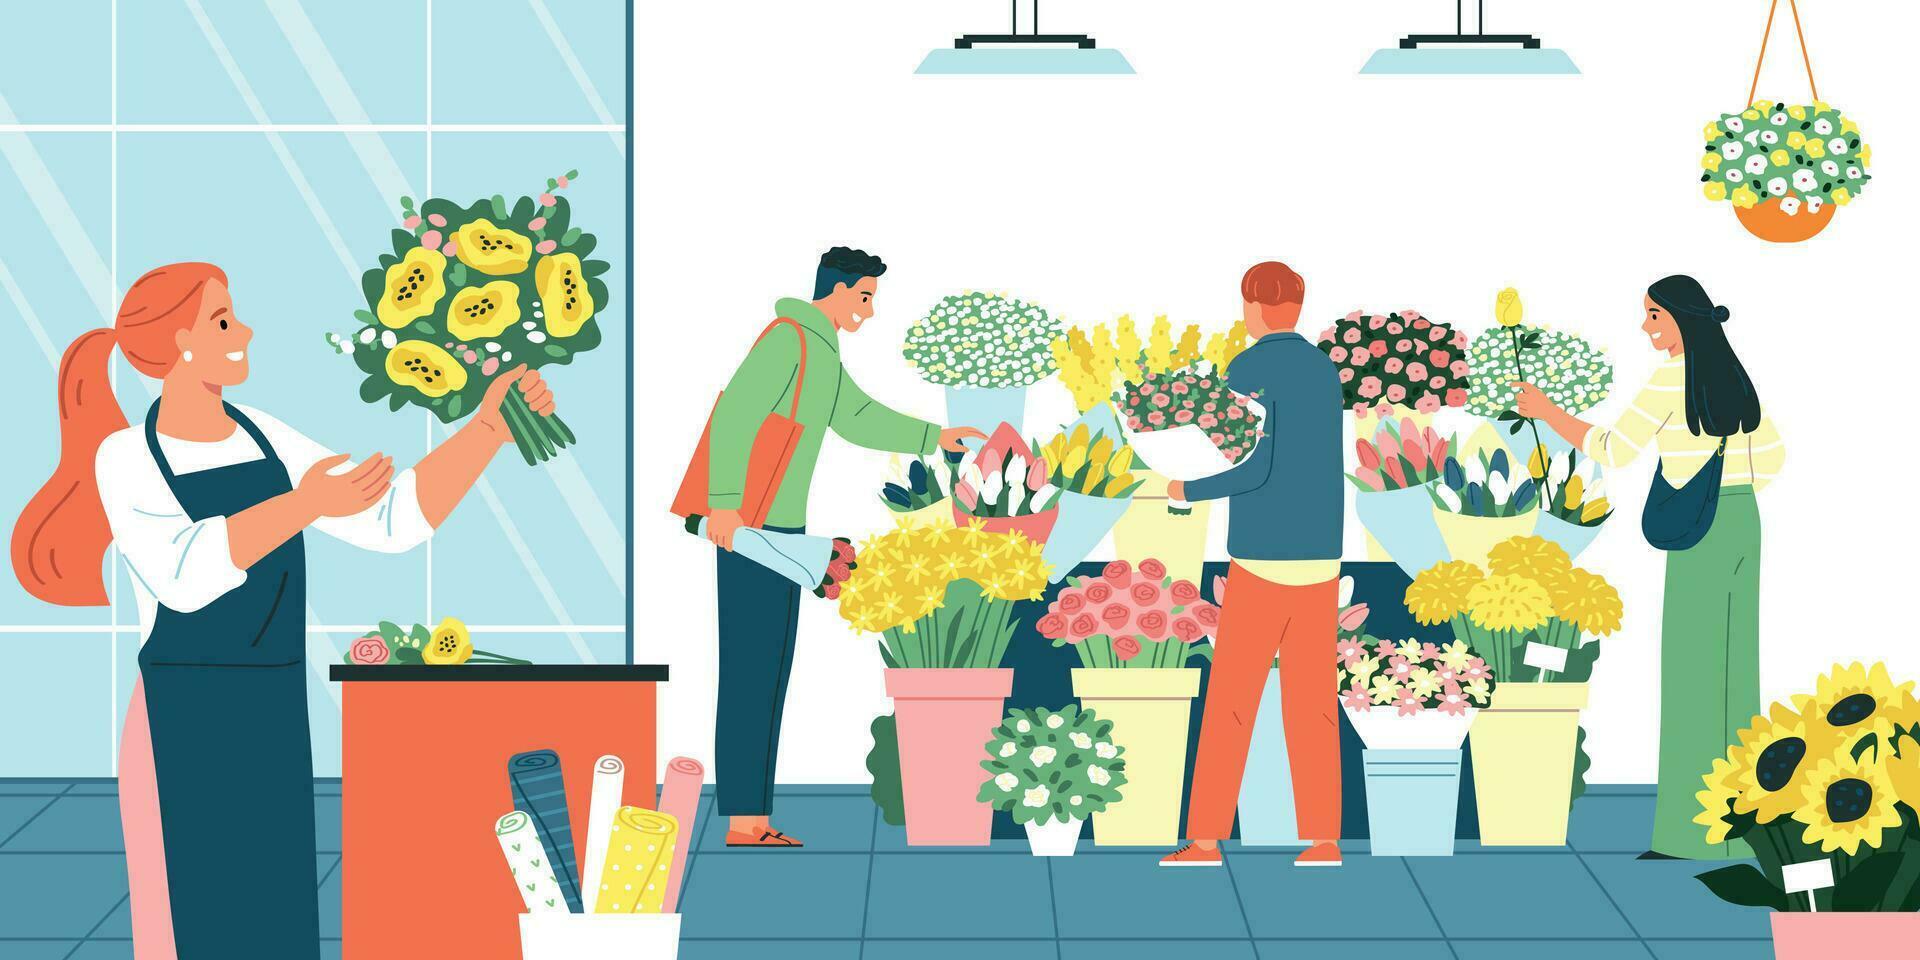 Flower And Florist Shop Illustration vector